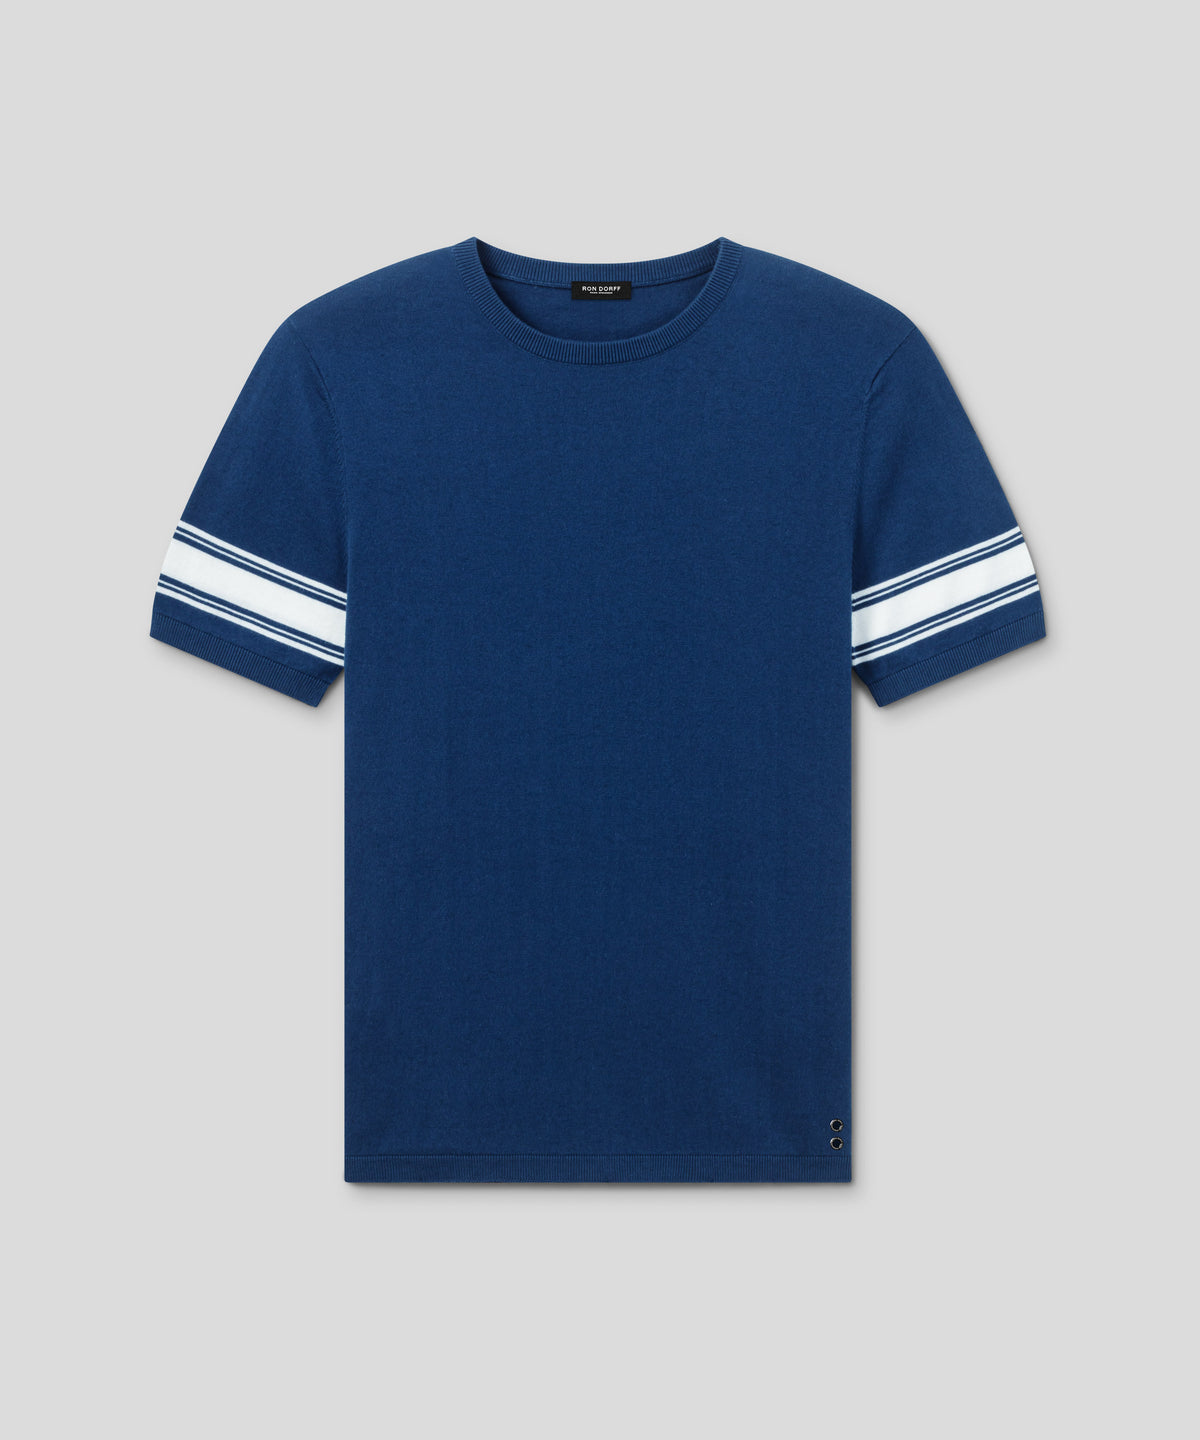 T-shirt en maille à rayures placées: Bleu foncé